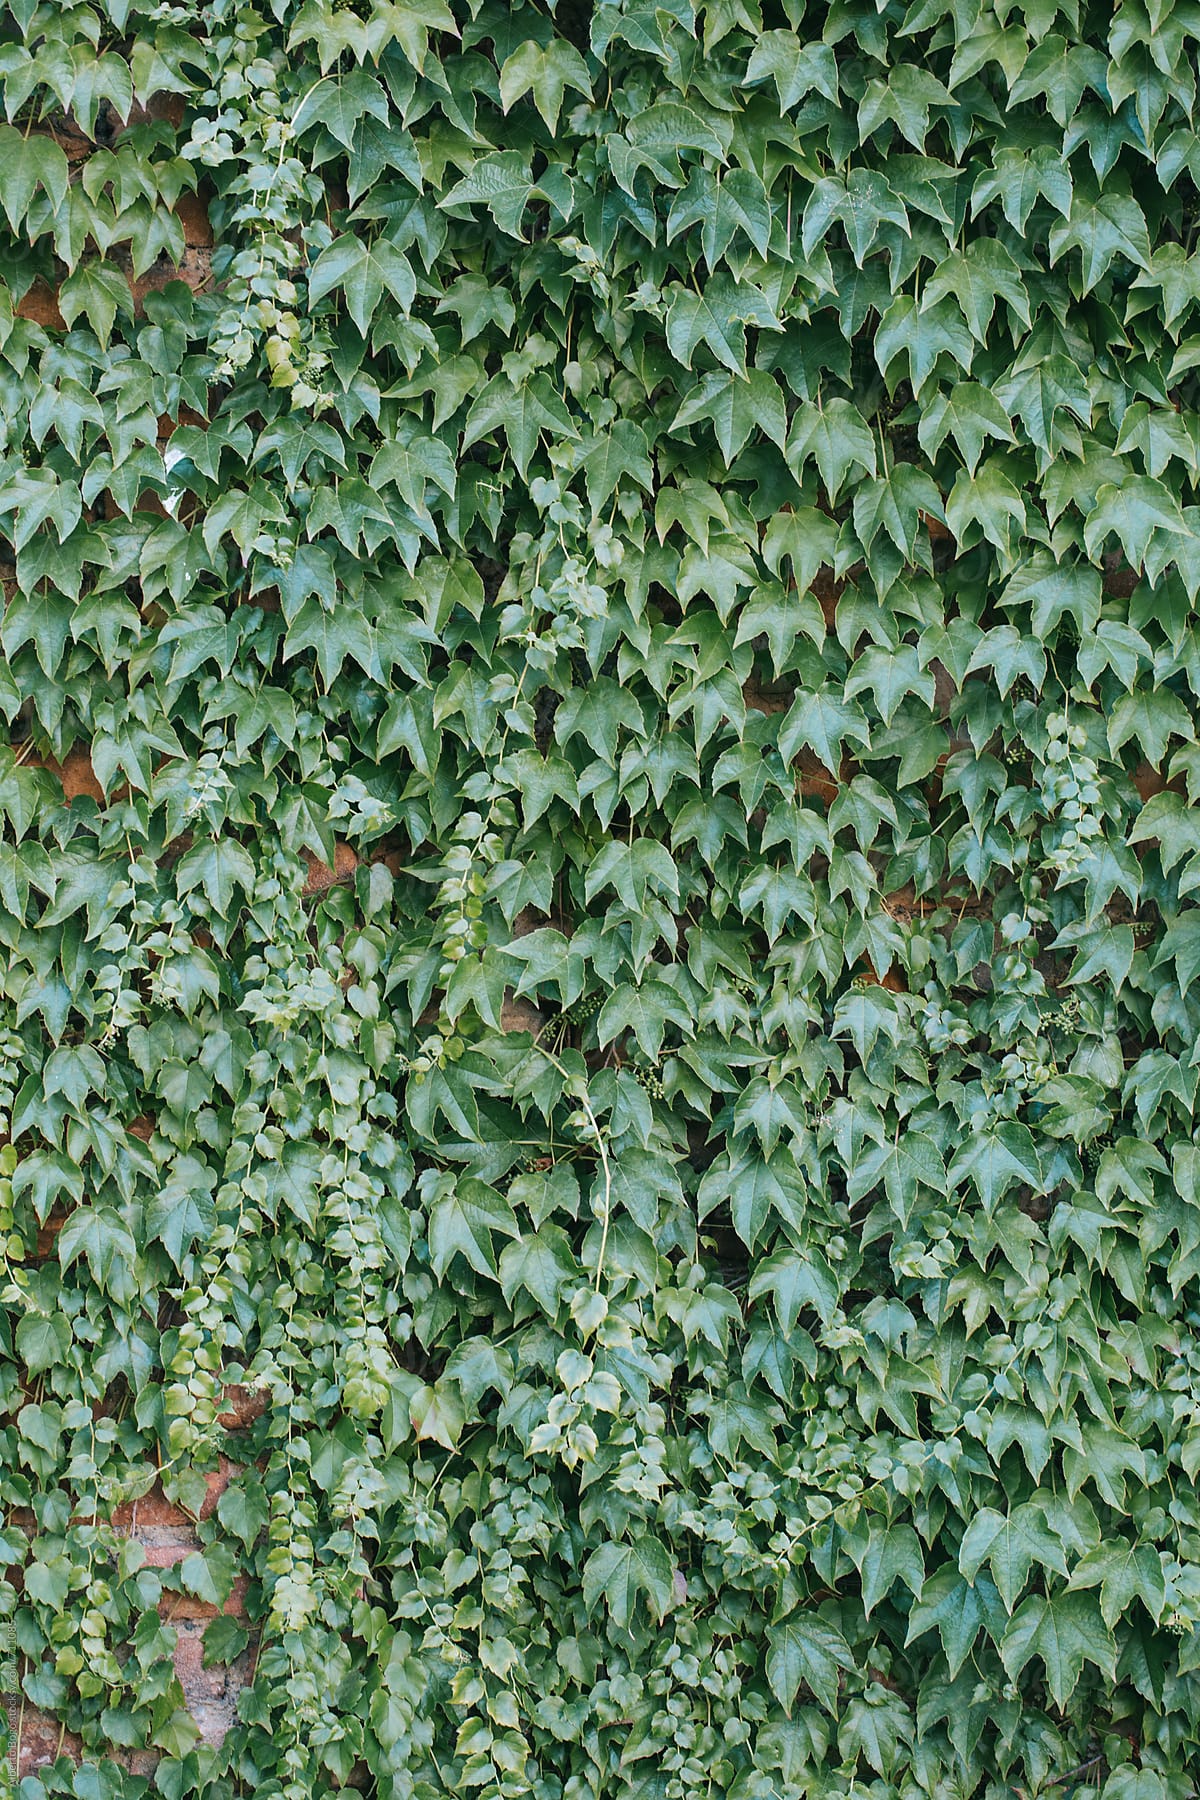 Blanket of ivy leaves